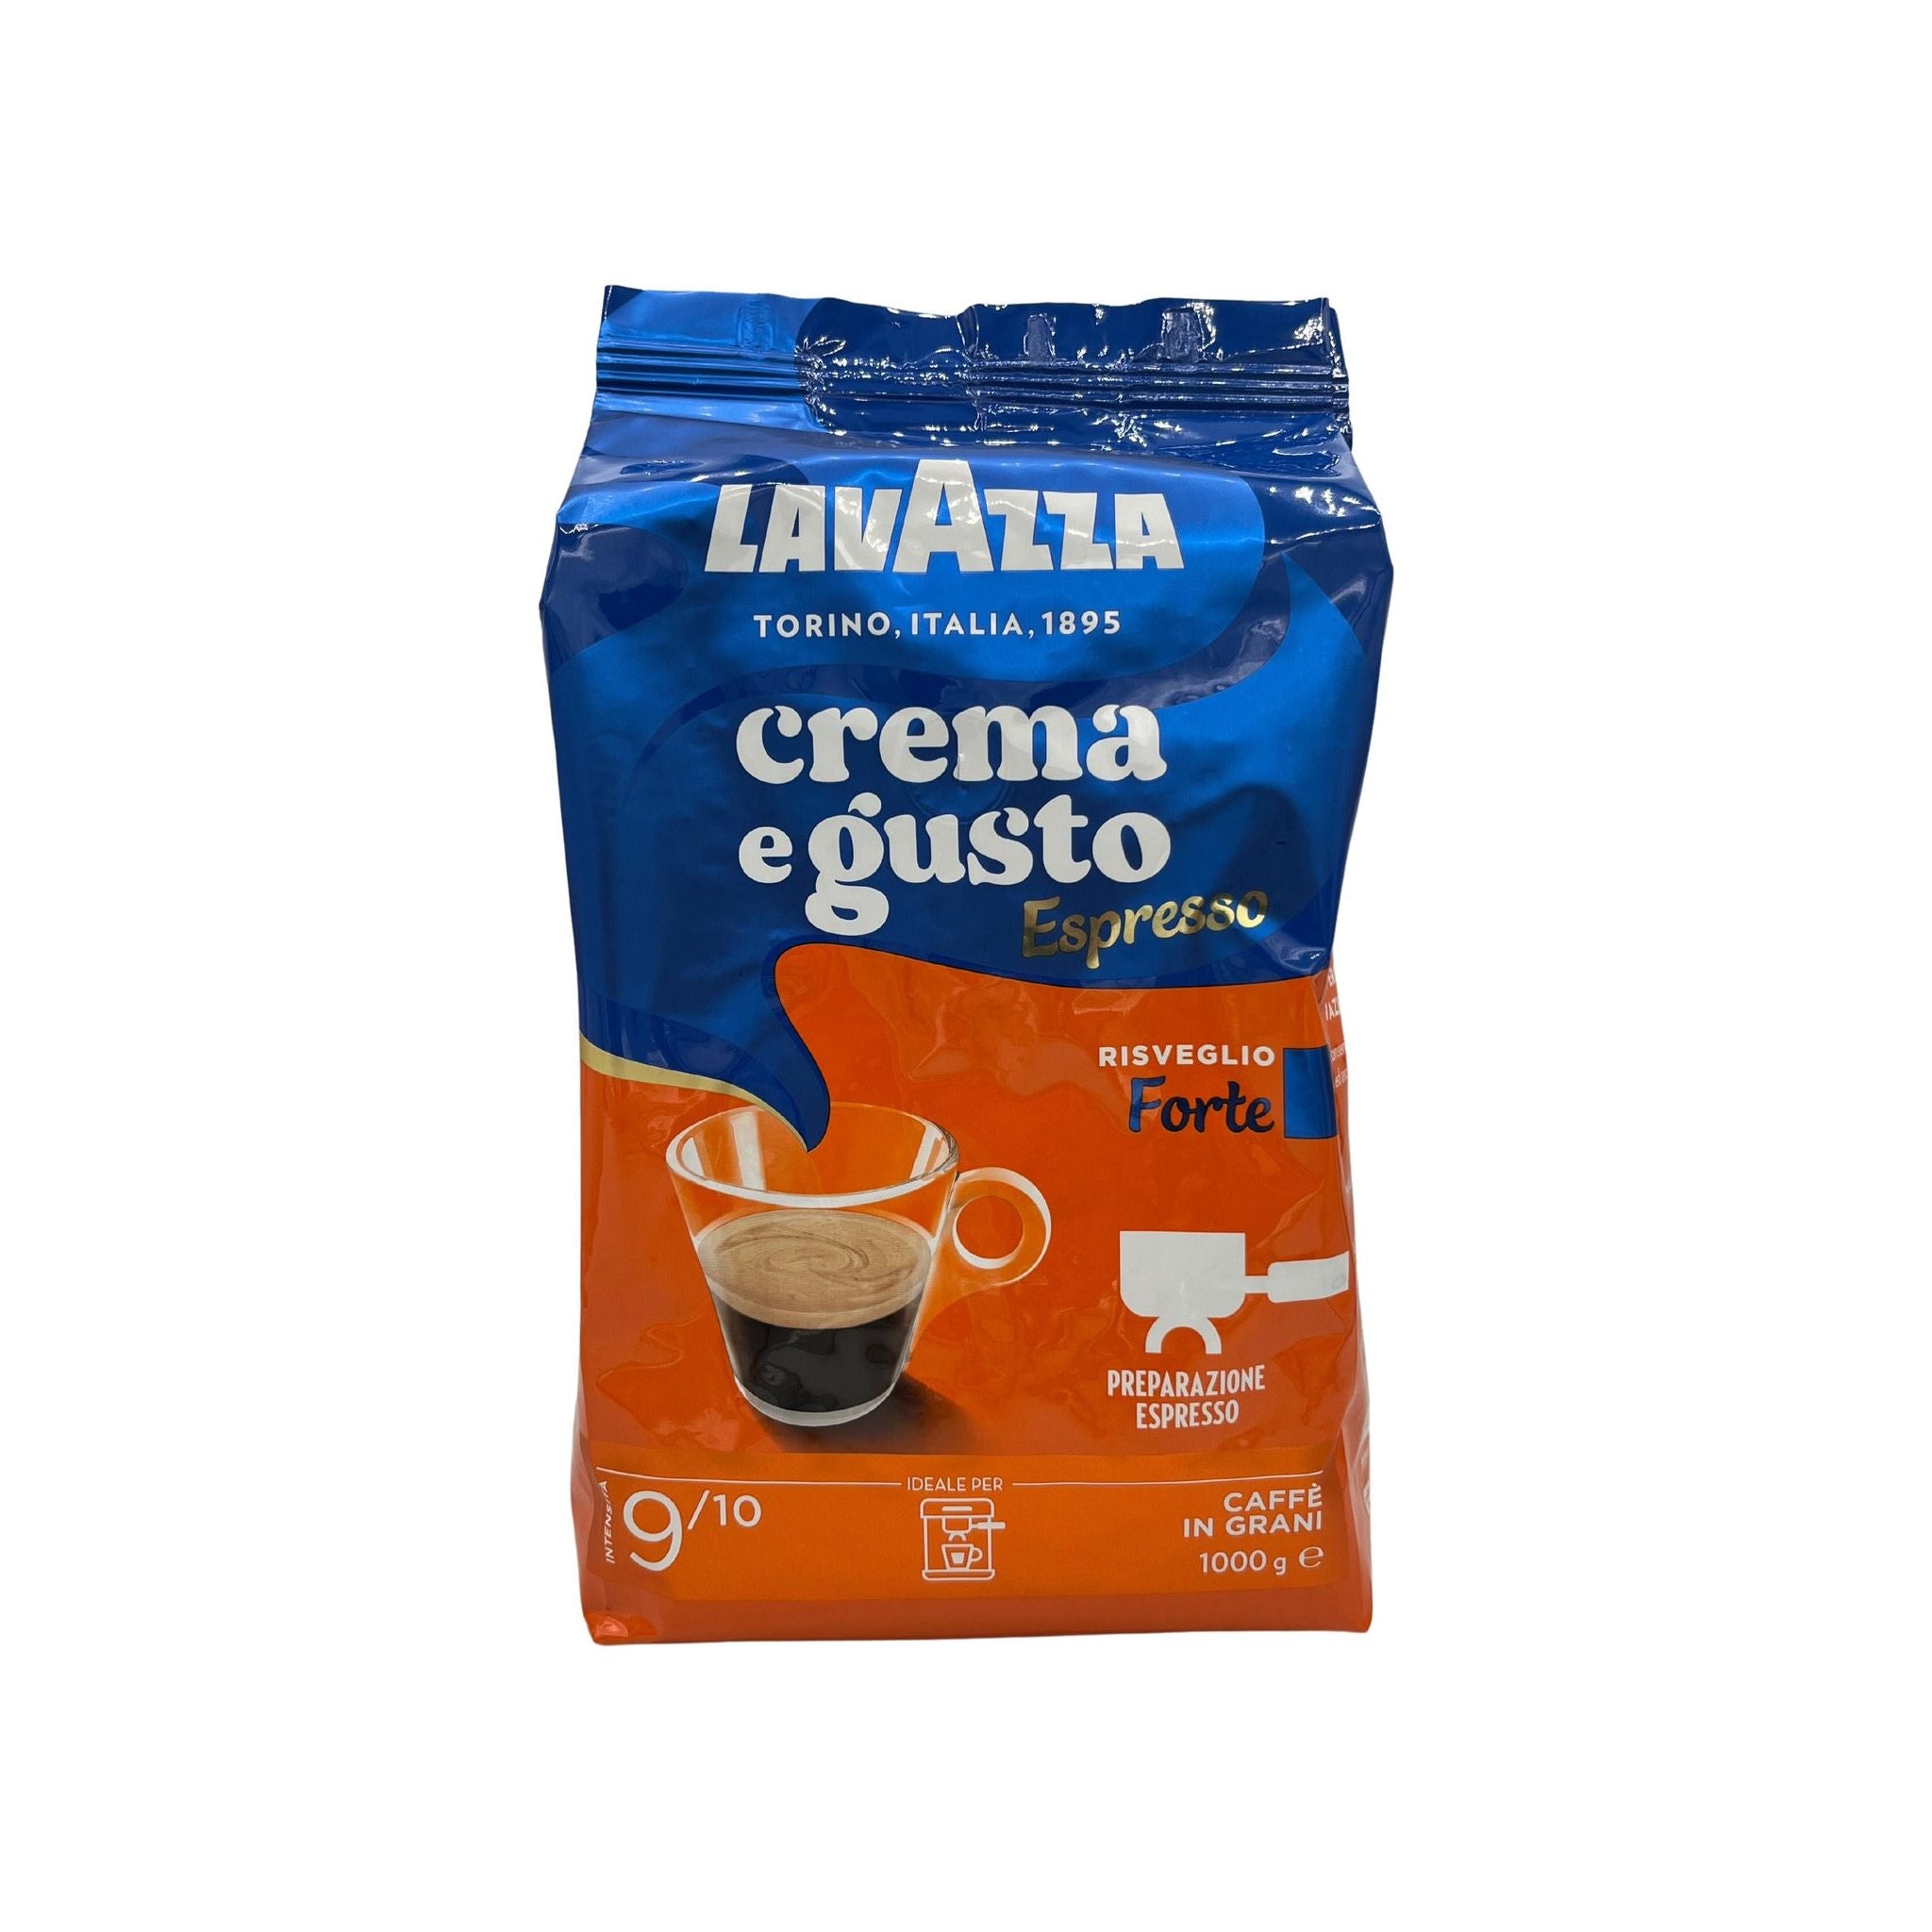 Review: LavAzza Crema e Gusto VS. LavAzza Espresso Italiano- Does